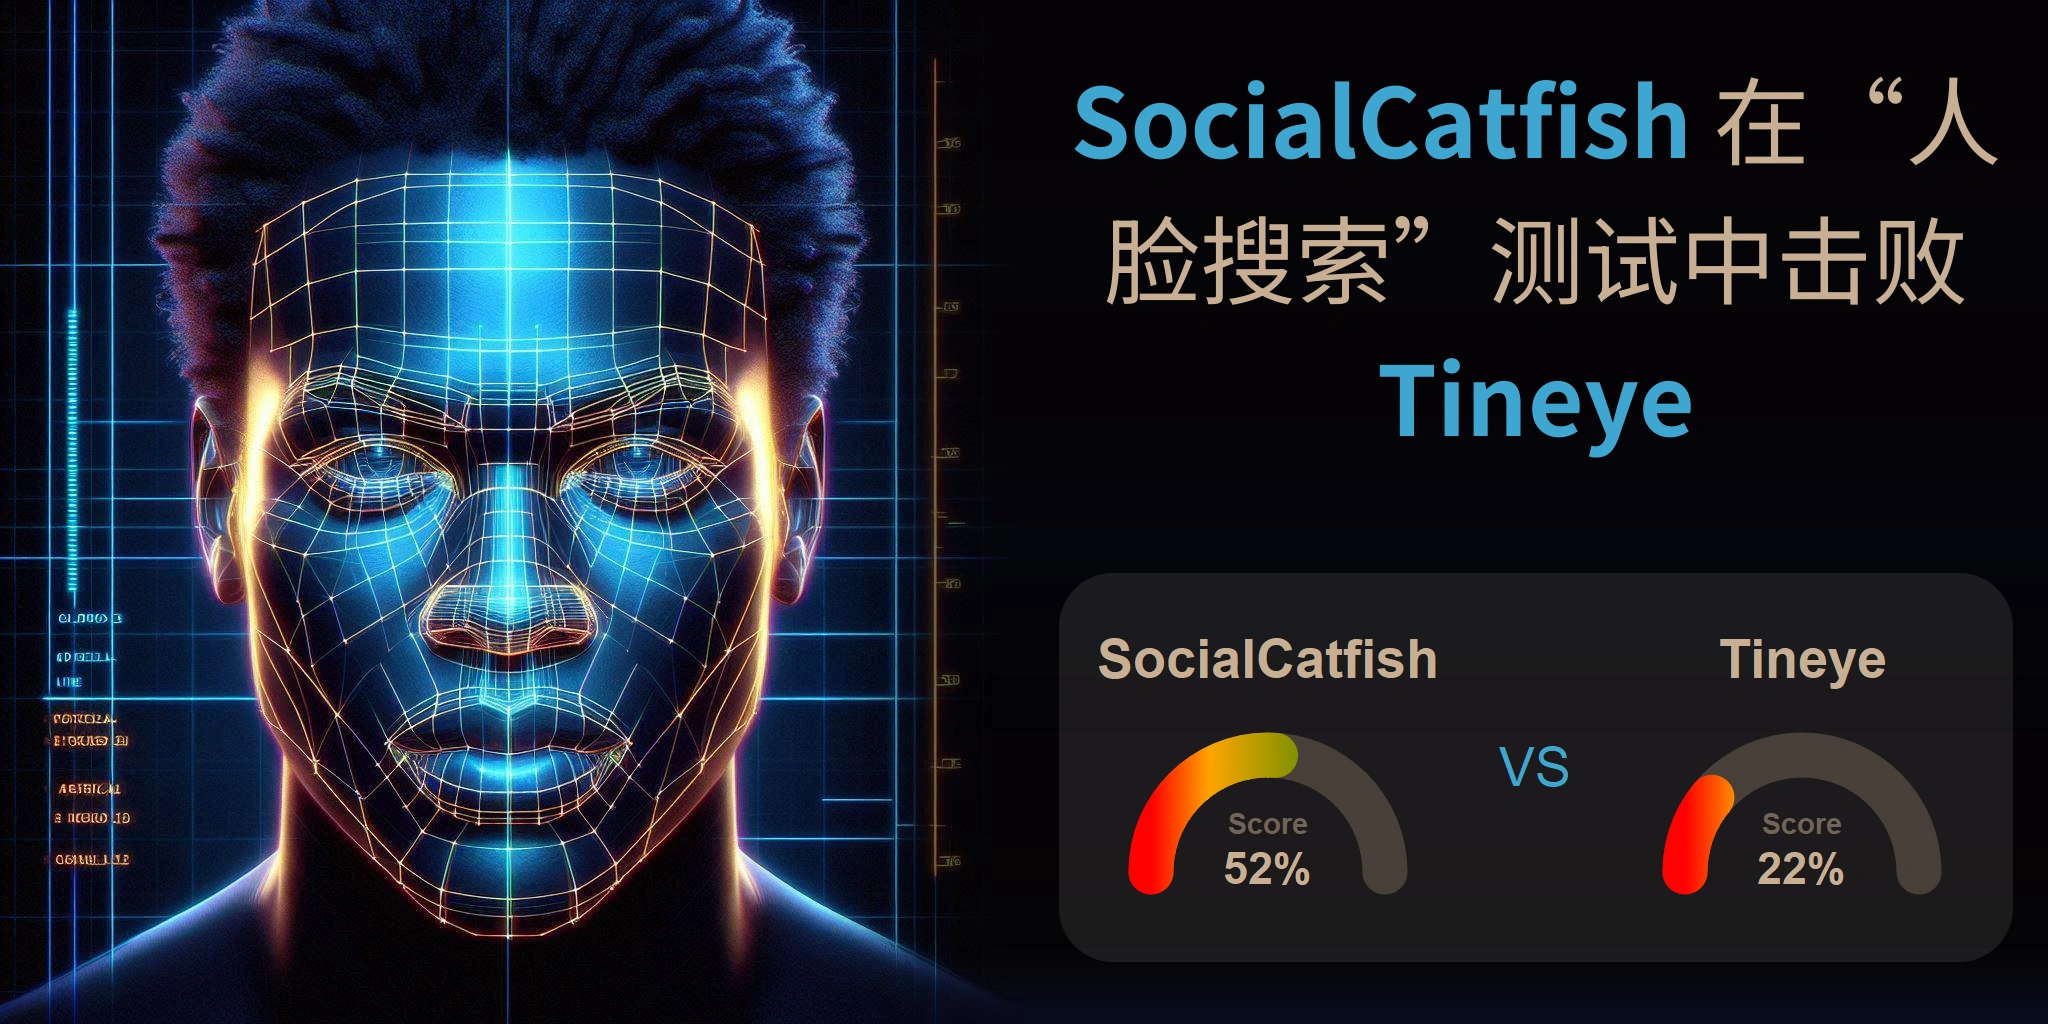 哪一个更适合人脸搜索：<br>Tineye 还是 SocialCatfish？